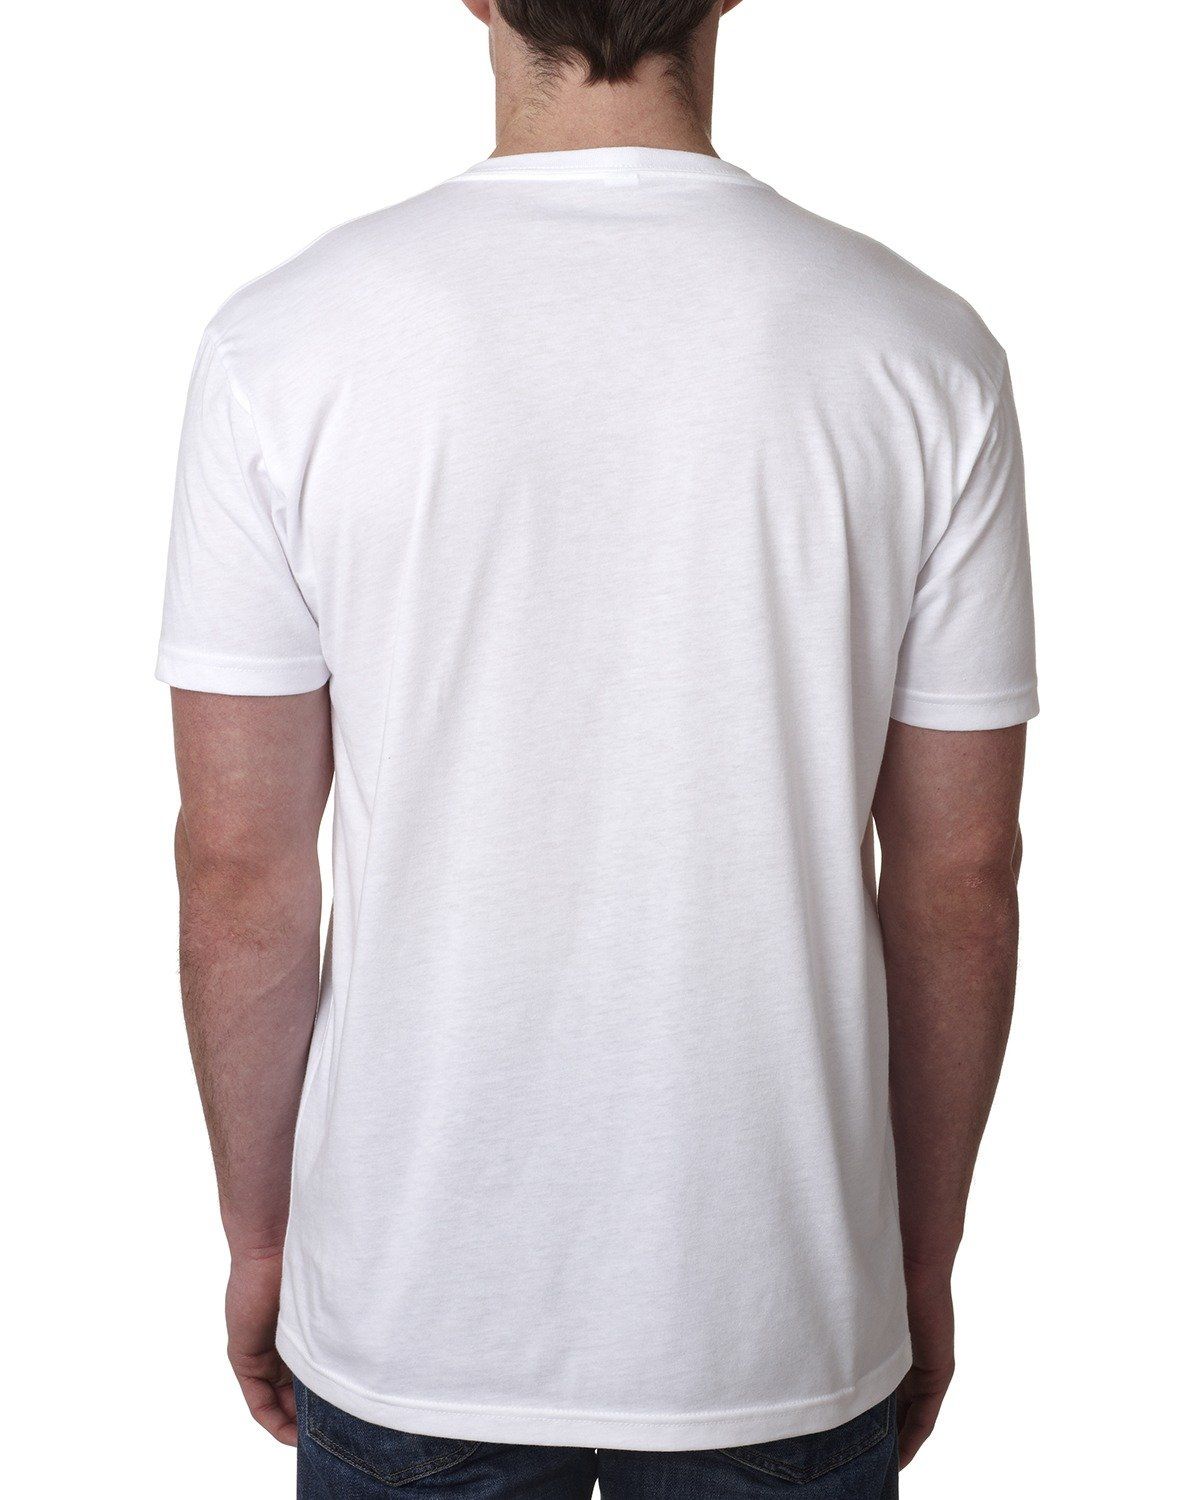 Next Level 6240 Unisex V-Neck T-Shirt | Veetrends